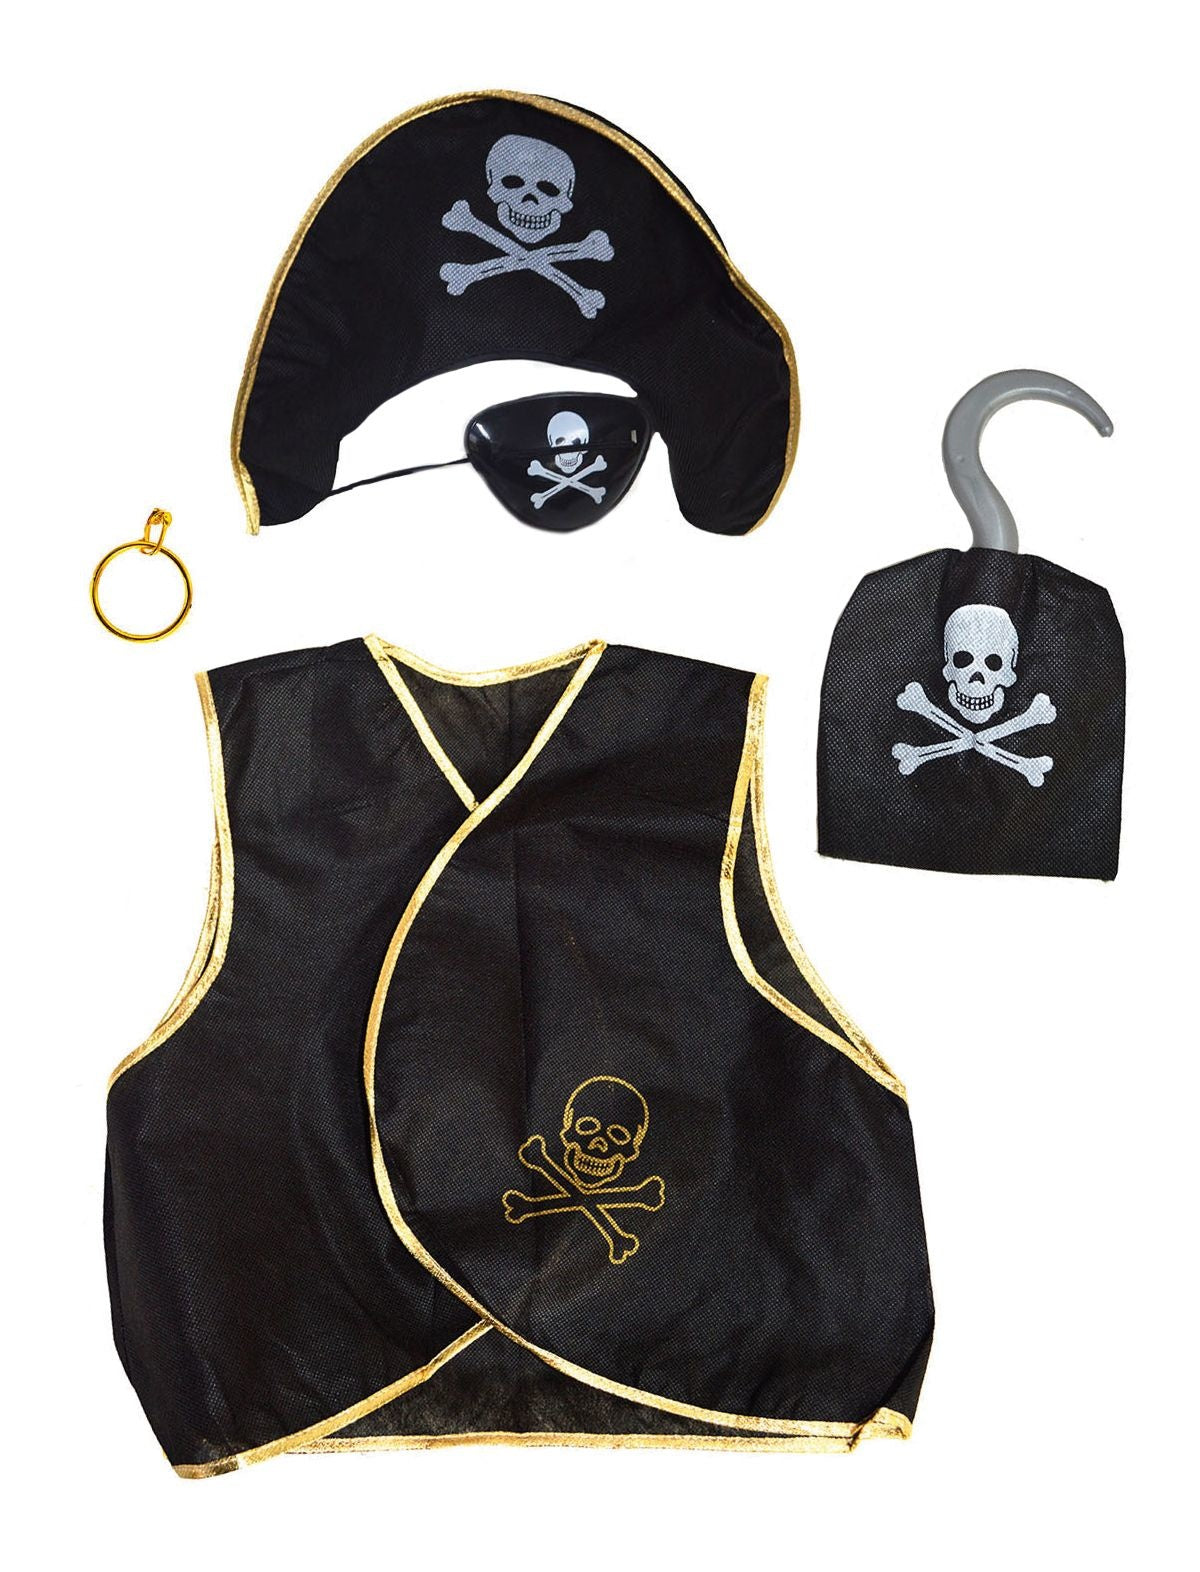 Kinderen speelgoed verkleed set in Piraten stijl thema 5-delig - Verkleedattributen